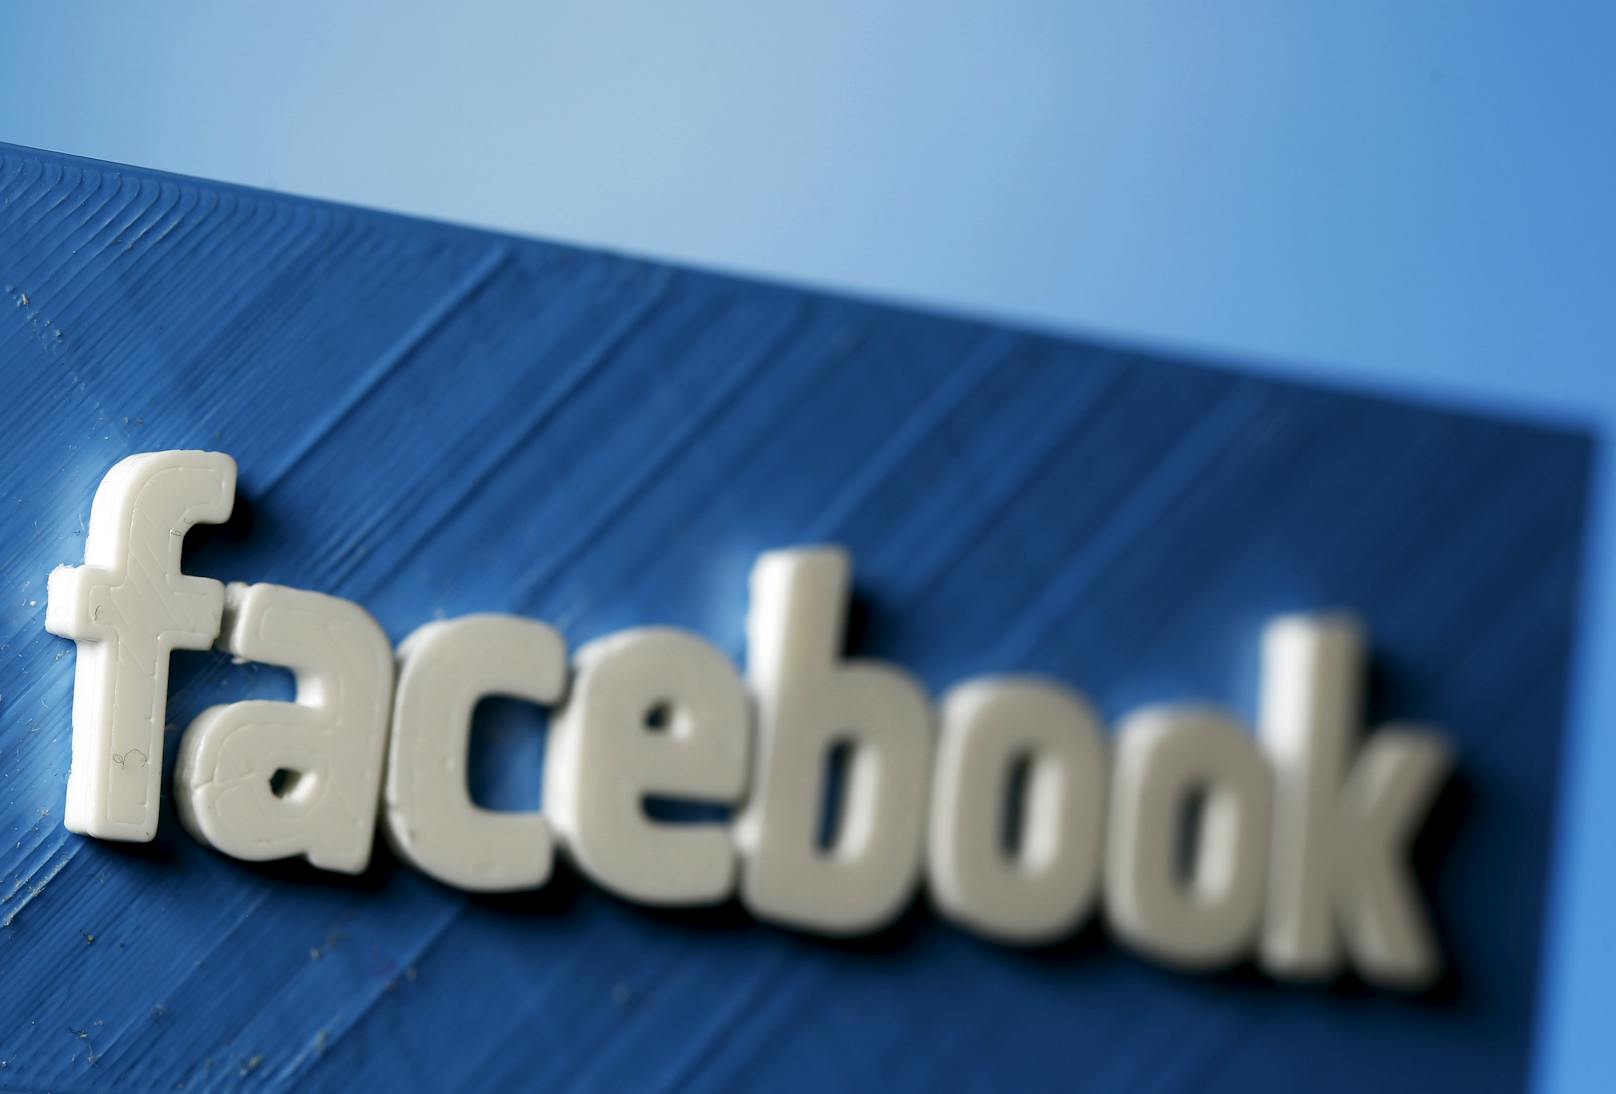 Laut Facebook wird auf dem sozialen Netzwerk jeder Beitrag, der den Holocaust verherrlicht, verteidigt oder versucht ihn zu rechtfertigen, entfernt.